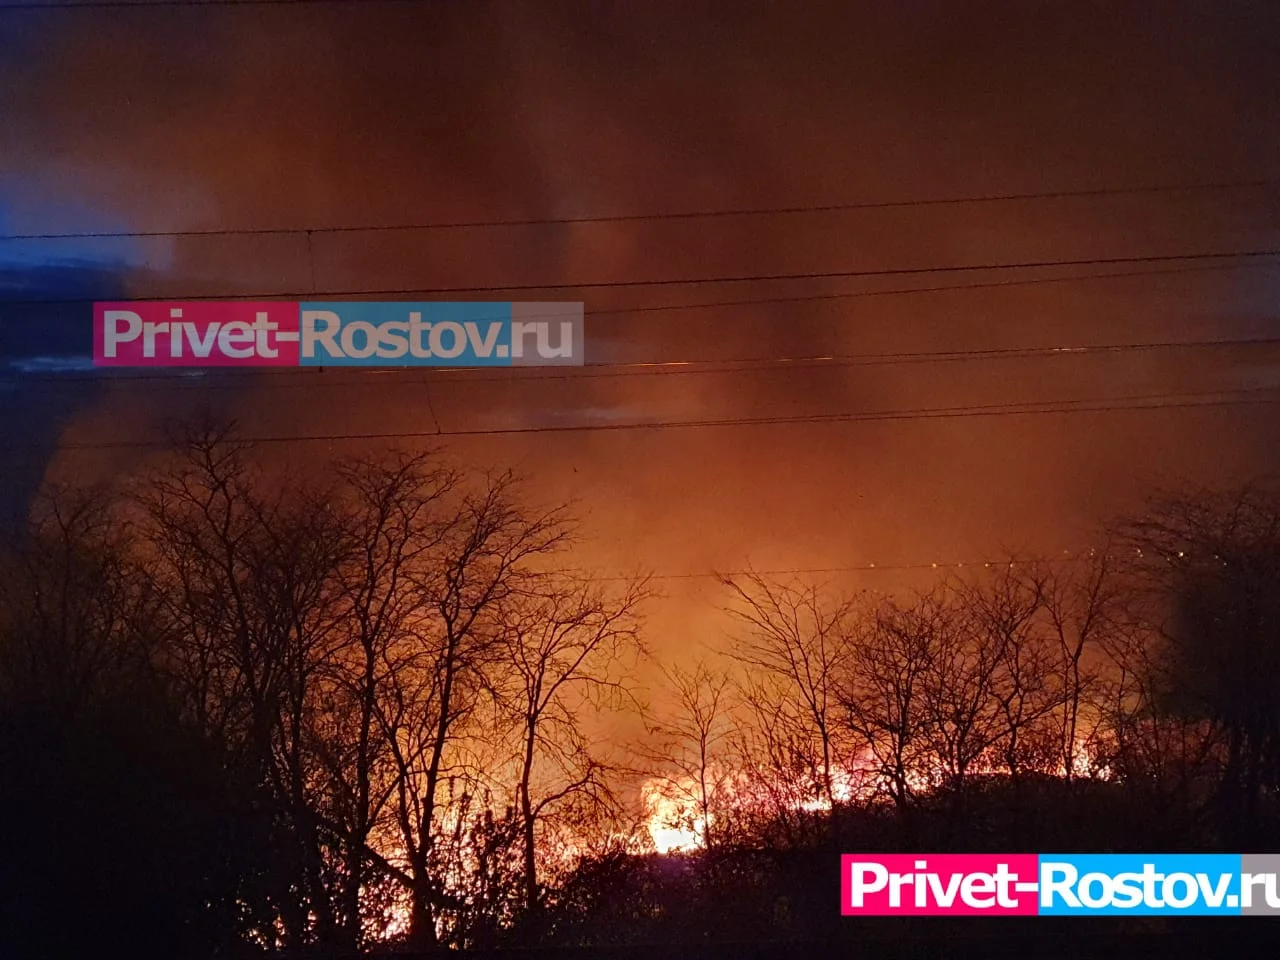 Без паники: в Ростовской области проводят контролируемые выжигания сухой травы